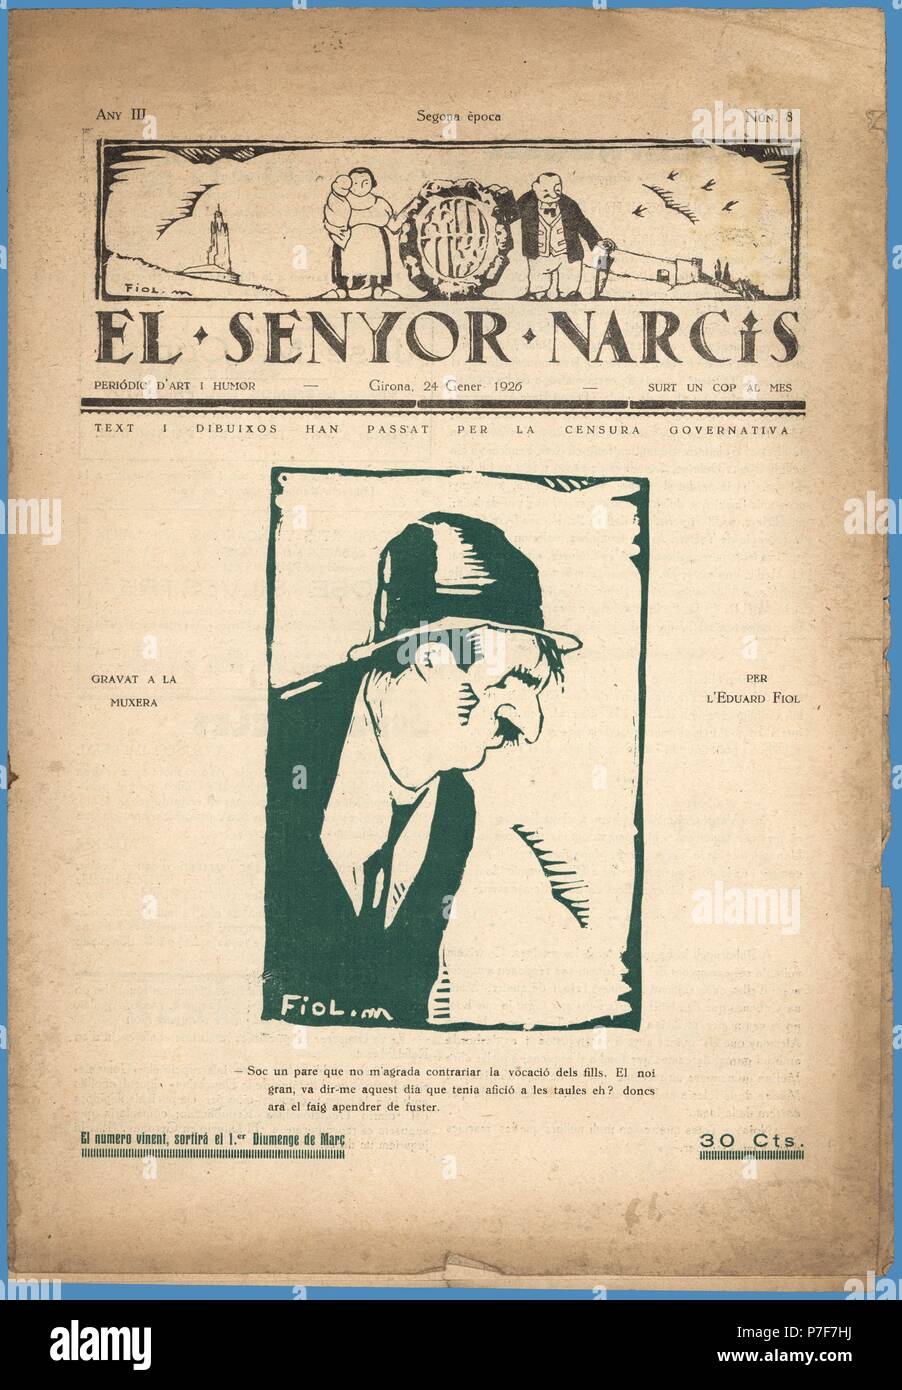 Portada de la revista de arte y humor El Senyor Narcís, editada en Girona, enero de 1926. Stock Photo